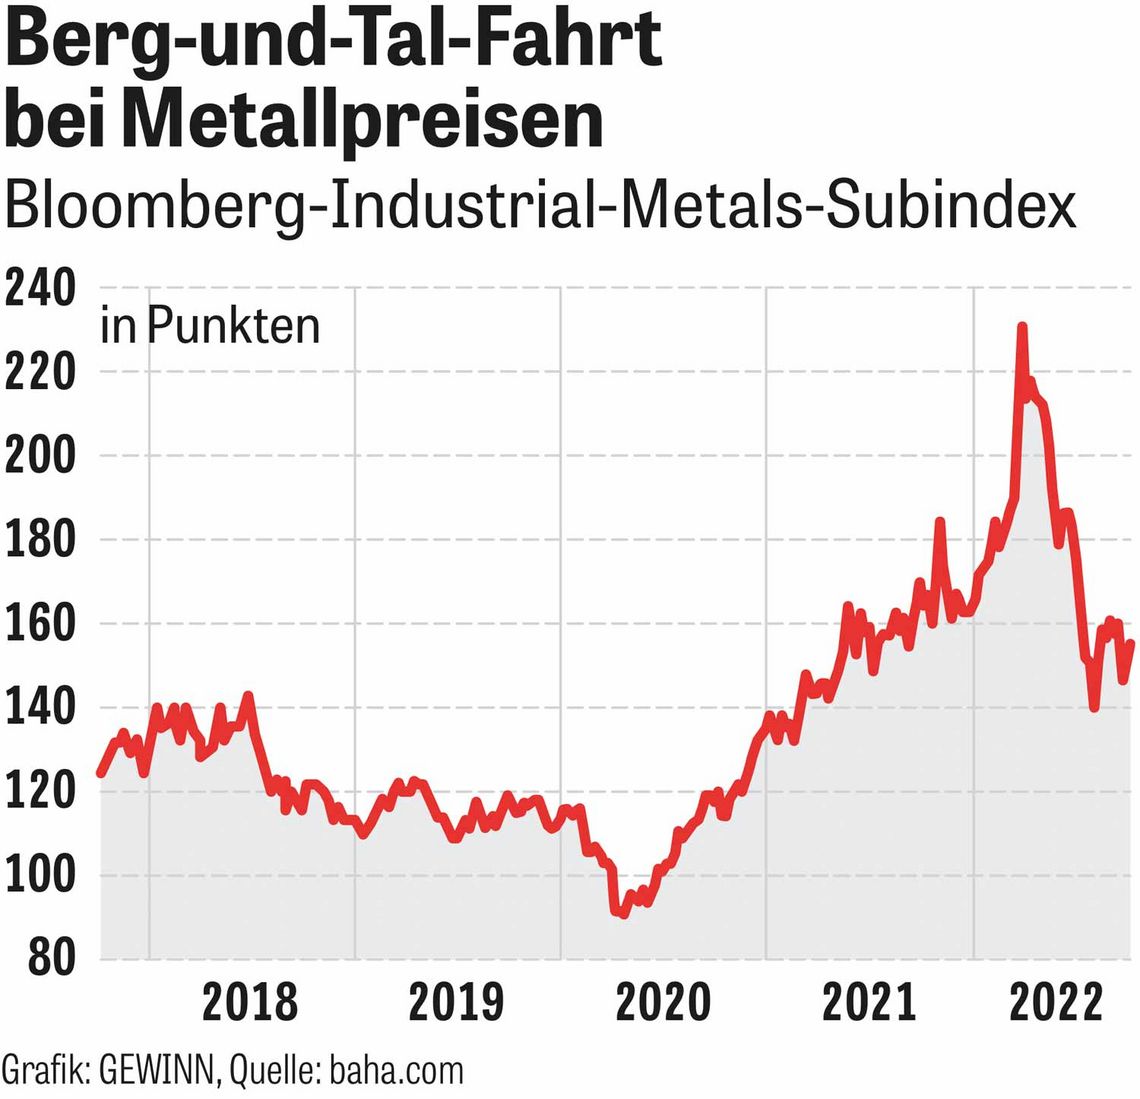 Berg-und-Tal-Fahrt bei Metallpreisen - Bloomberg-Industrial-Metals-Subindex Chart